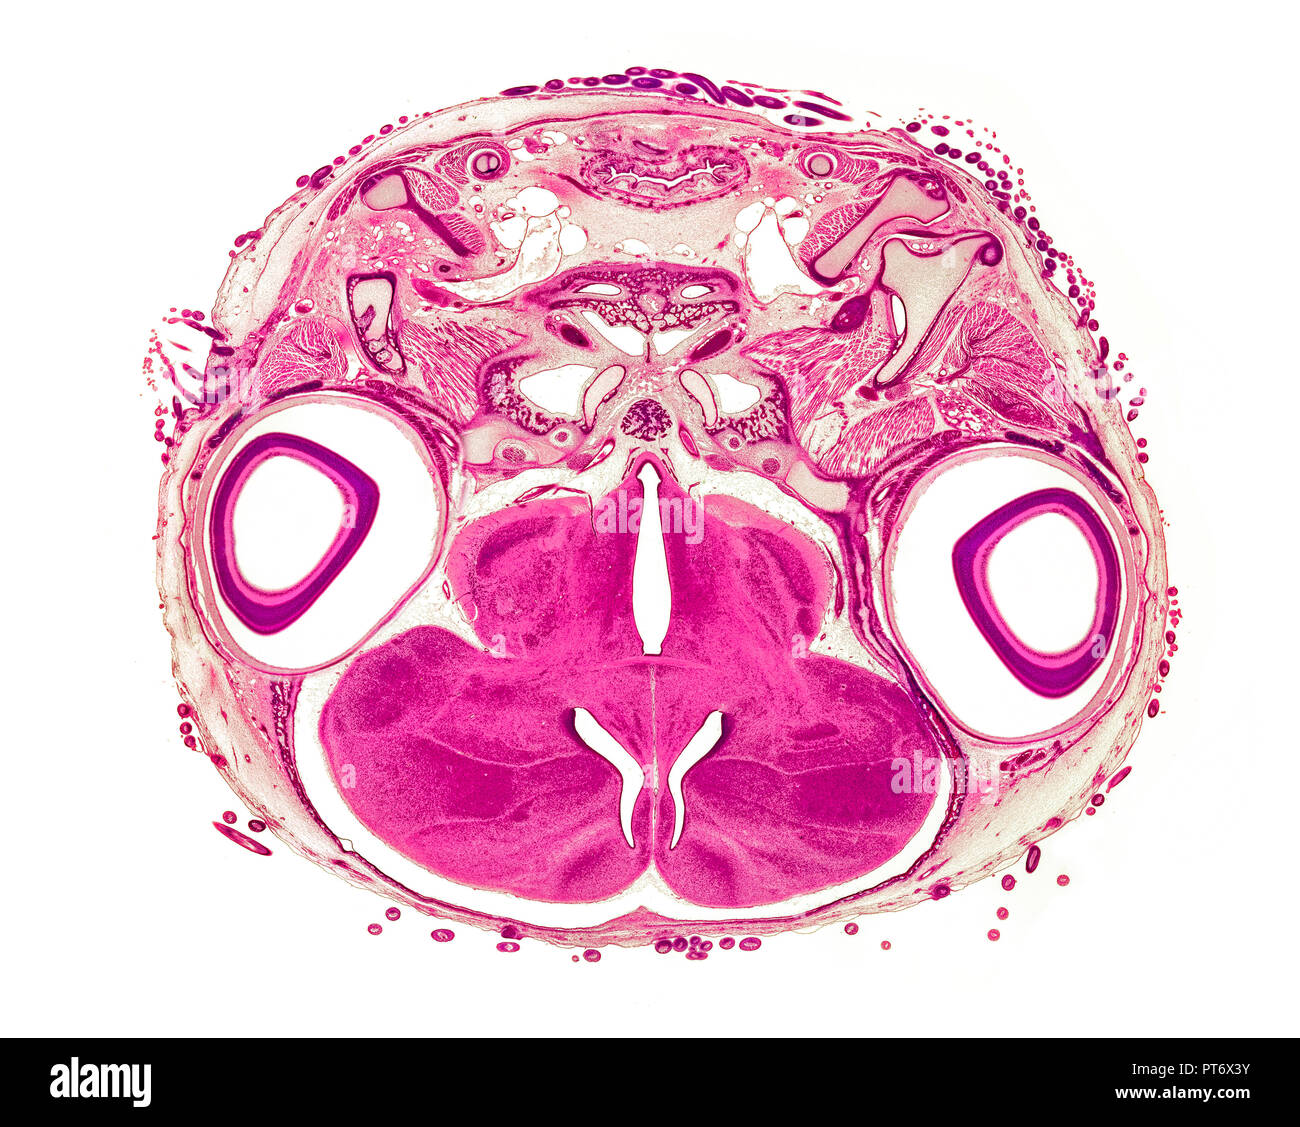 17 jours d'embryon de poulet XS section head, fond clair photomicrographie Banque D'Images